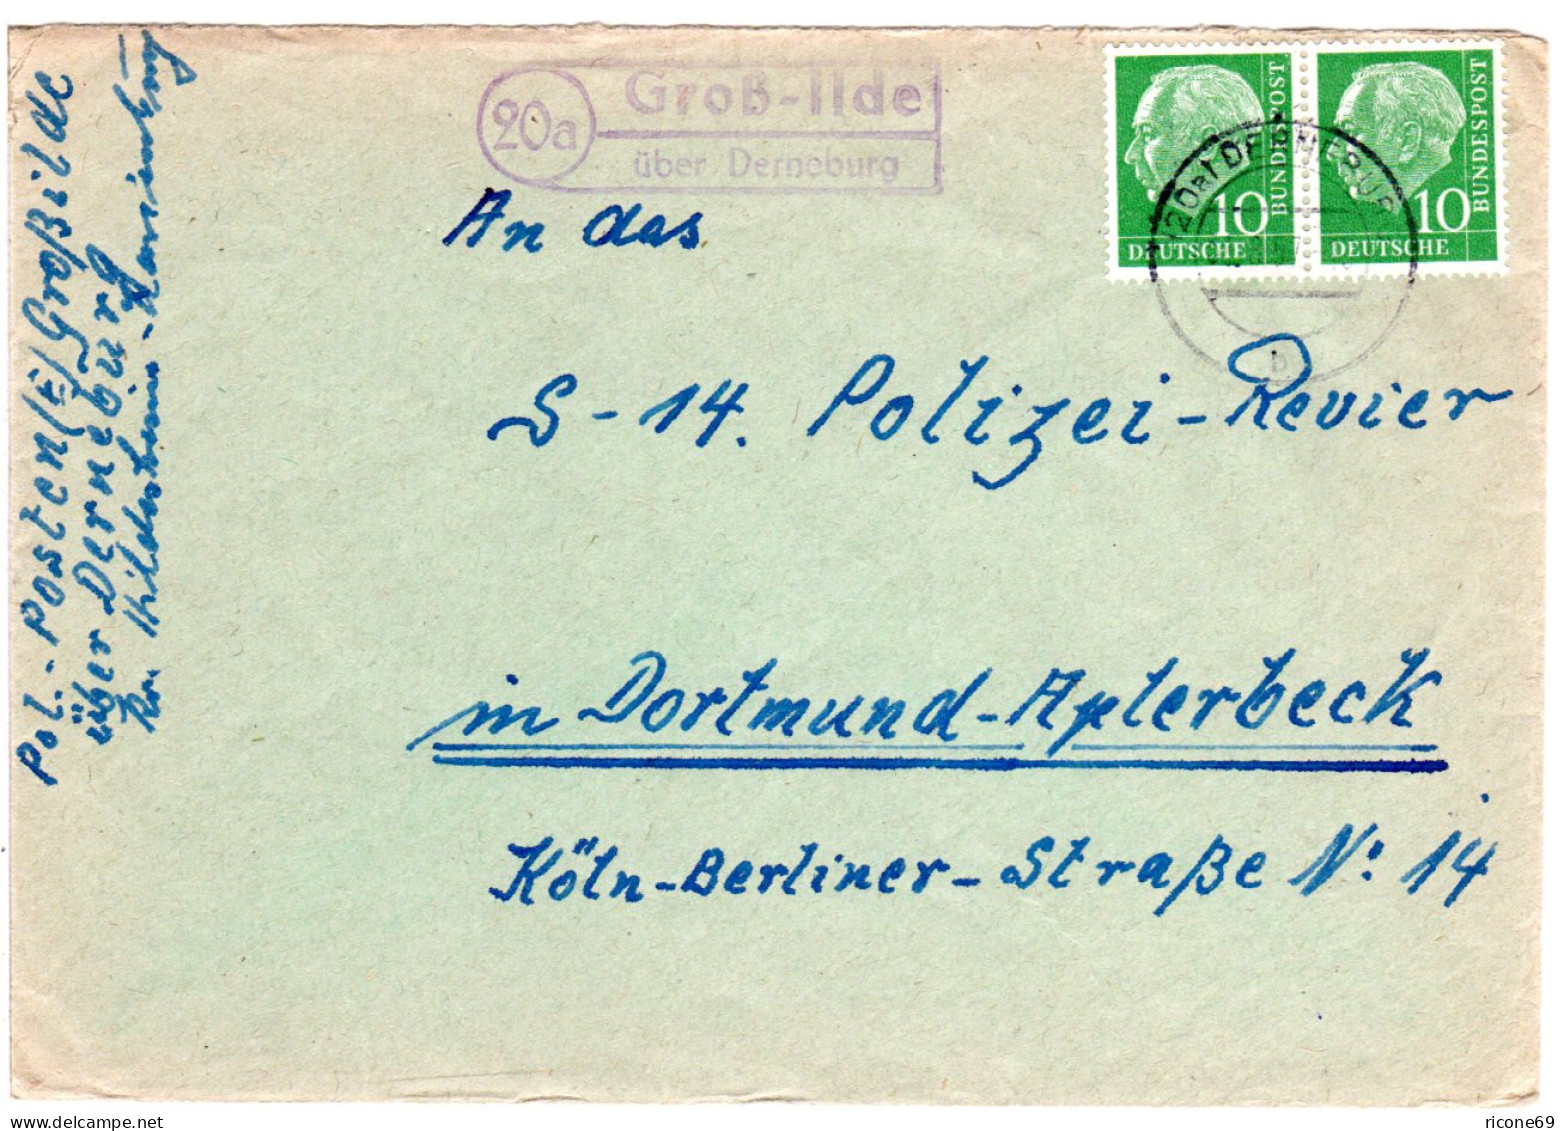 BRD 1957, Landpost Stpl. 20a GROSS-ILDE über Derneburg Auf Brief M. 2x10 Pf. - Covers & Documents